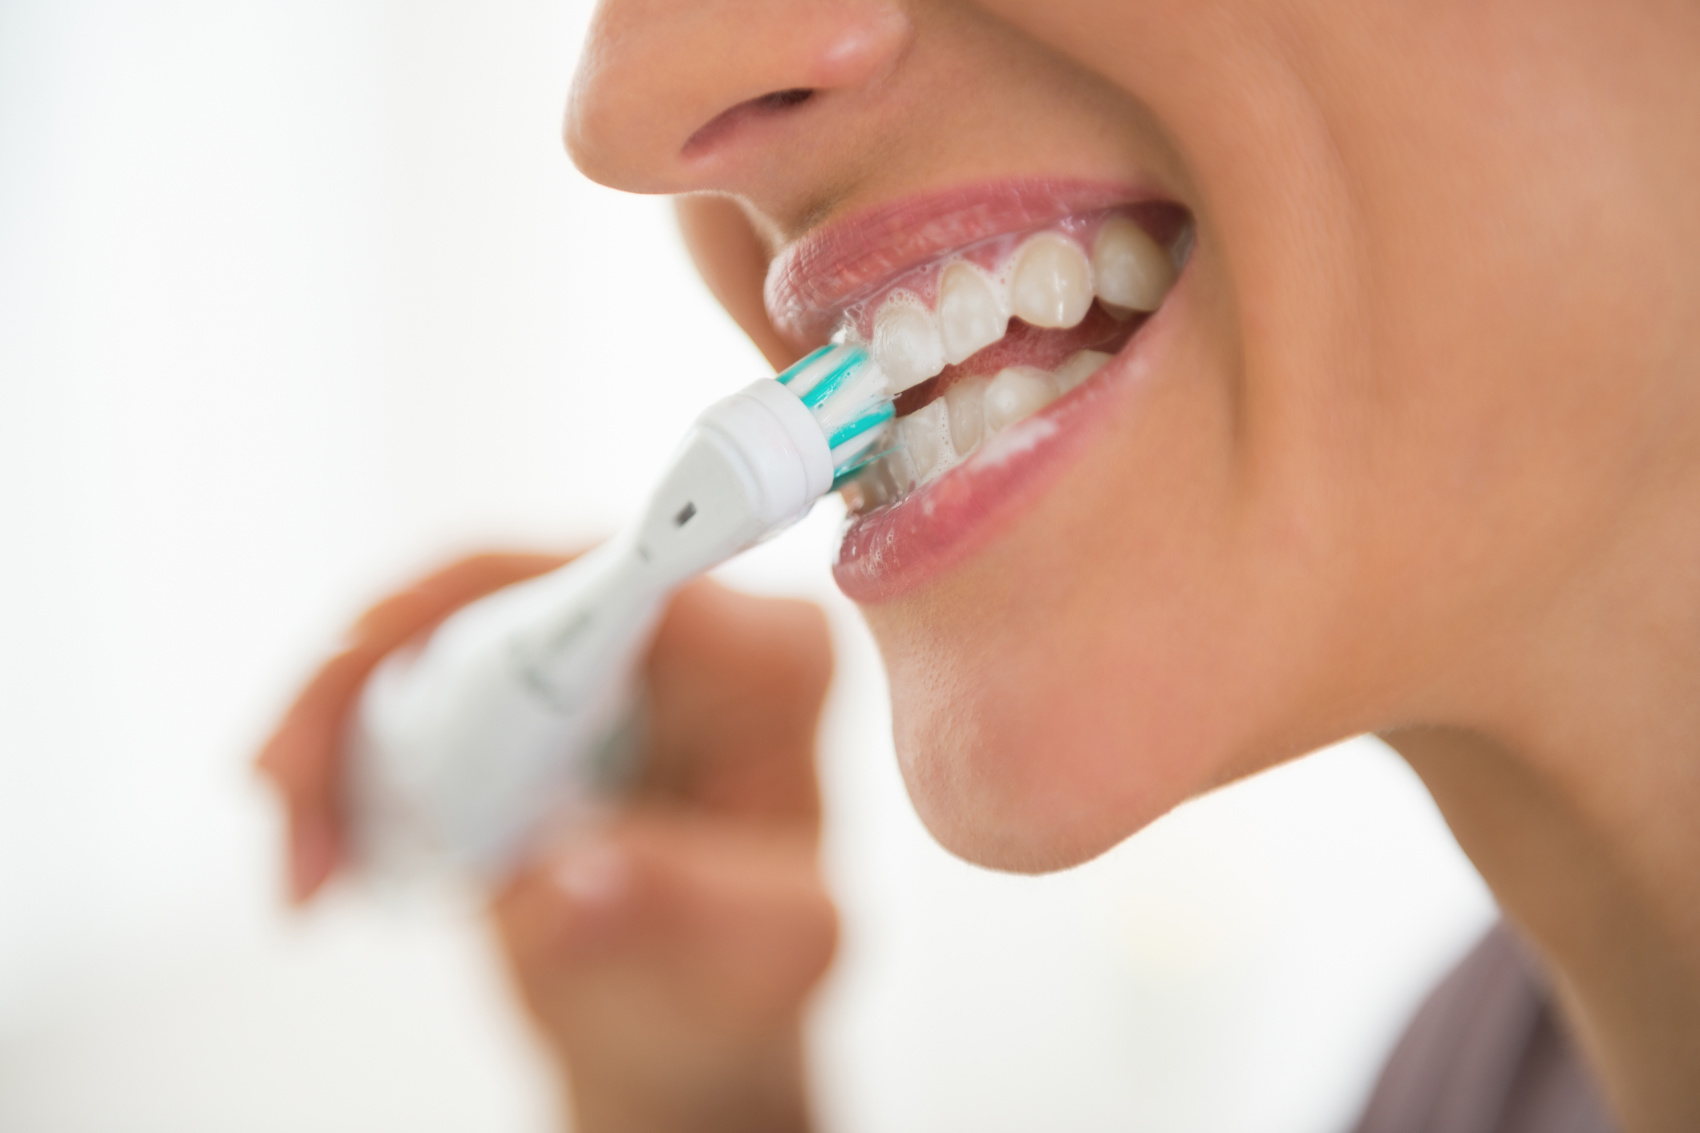 Oral hygiene, mouthwash, brush, whitening: true and false